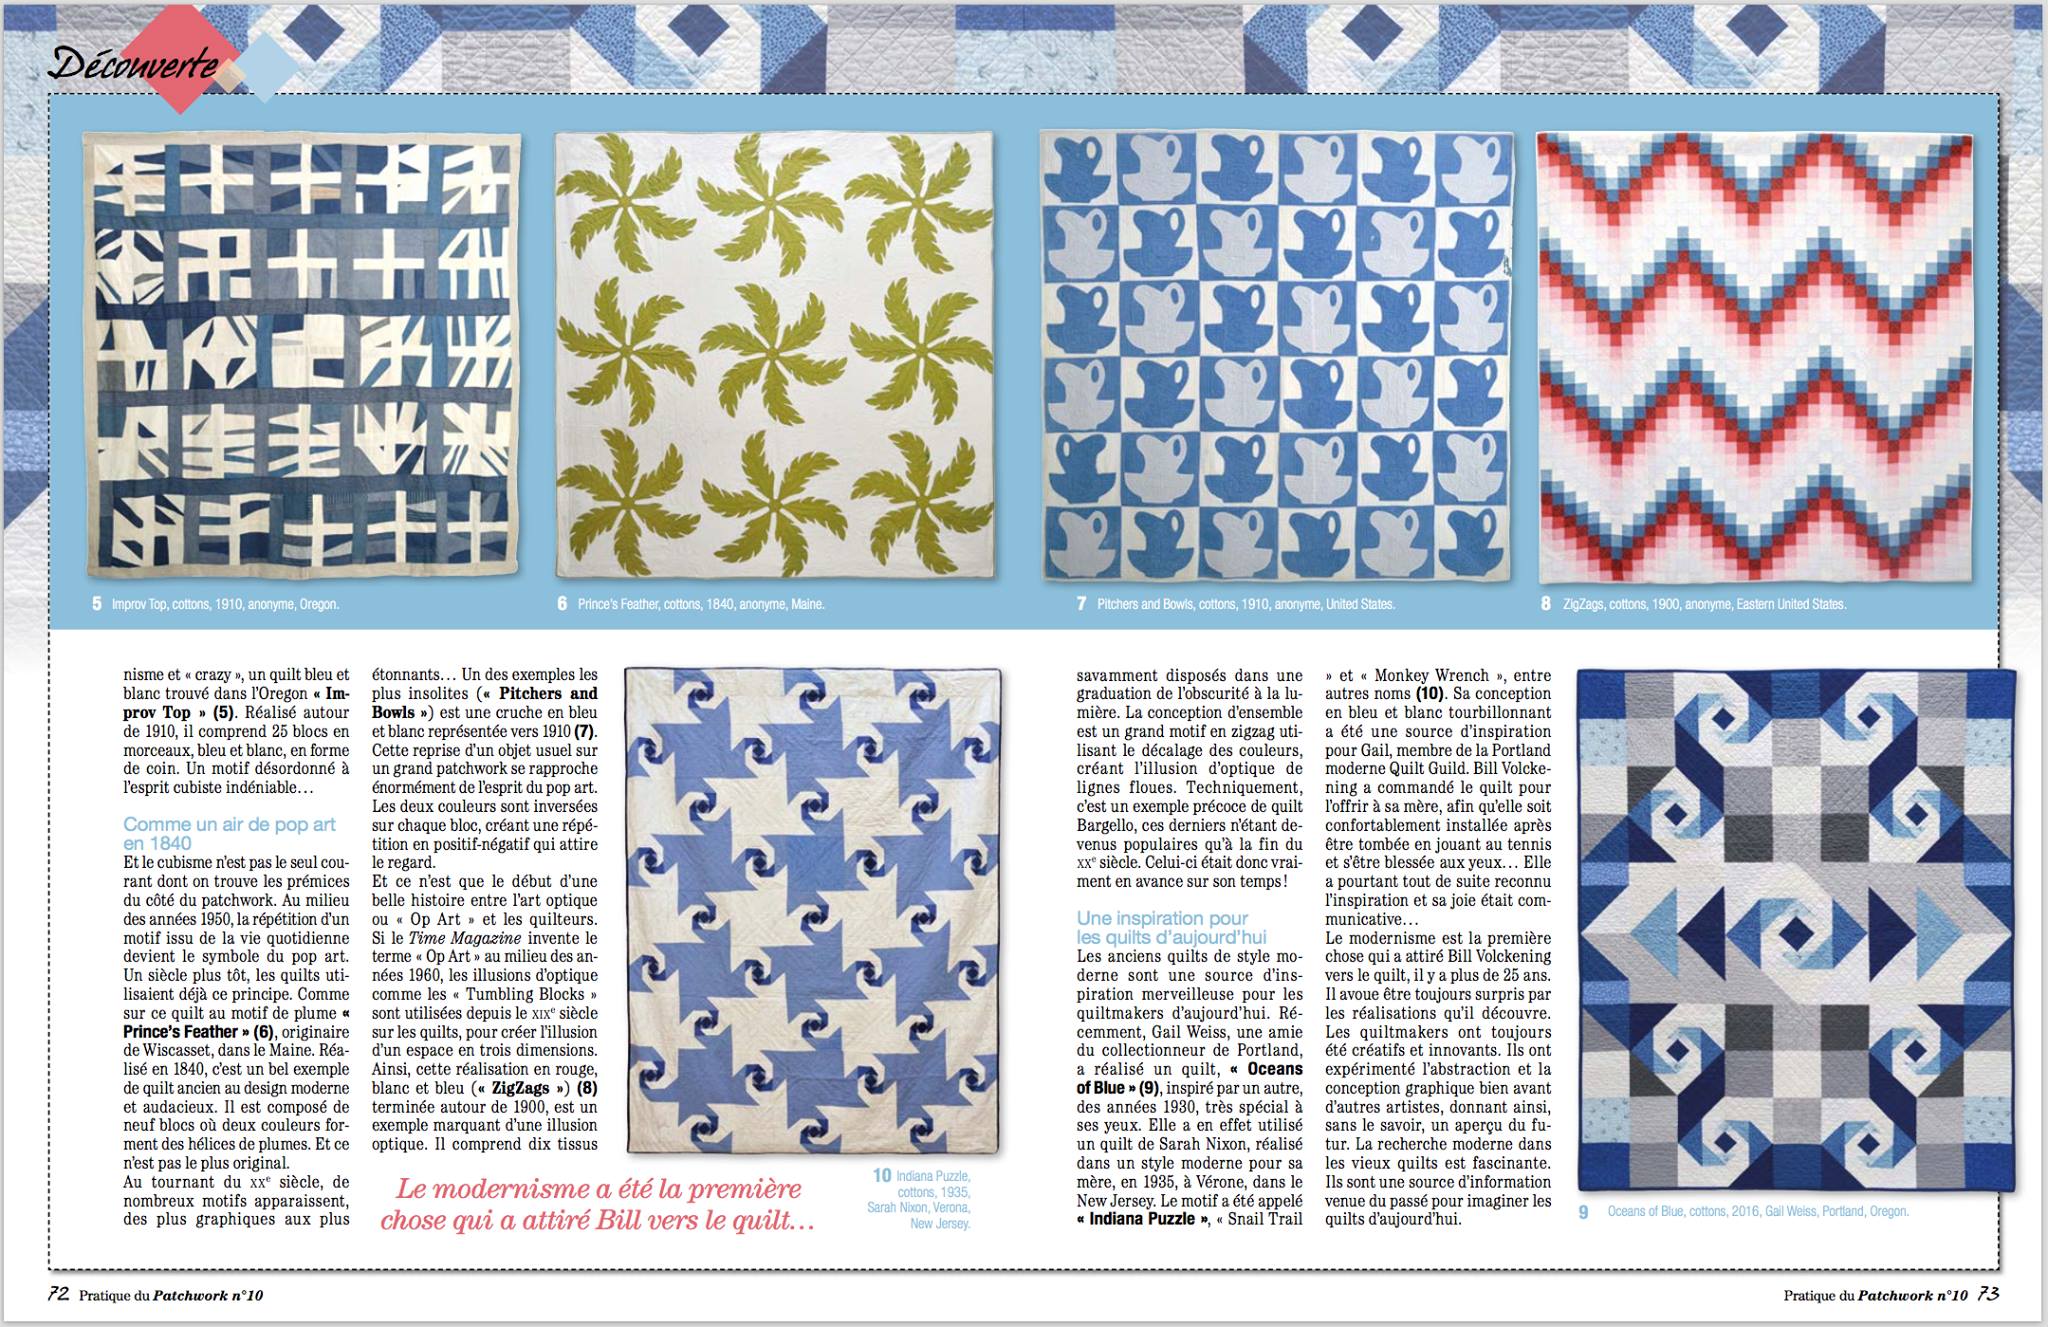 "Ocean's of Blue" (bottom right) quilt in: Pratique du Patchwork no. 10, France